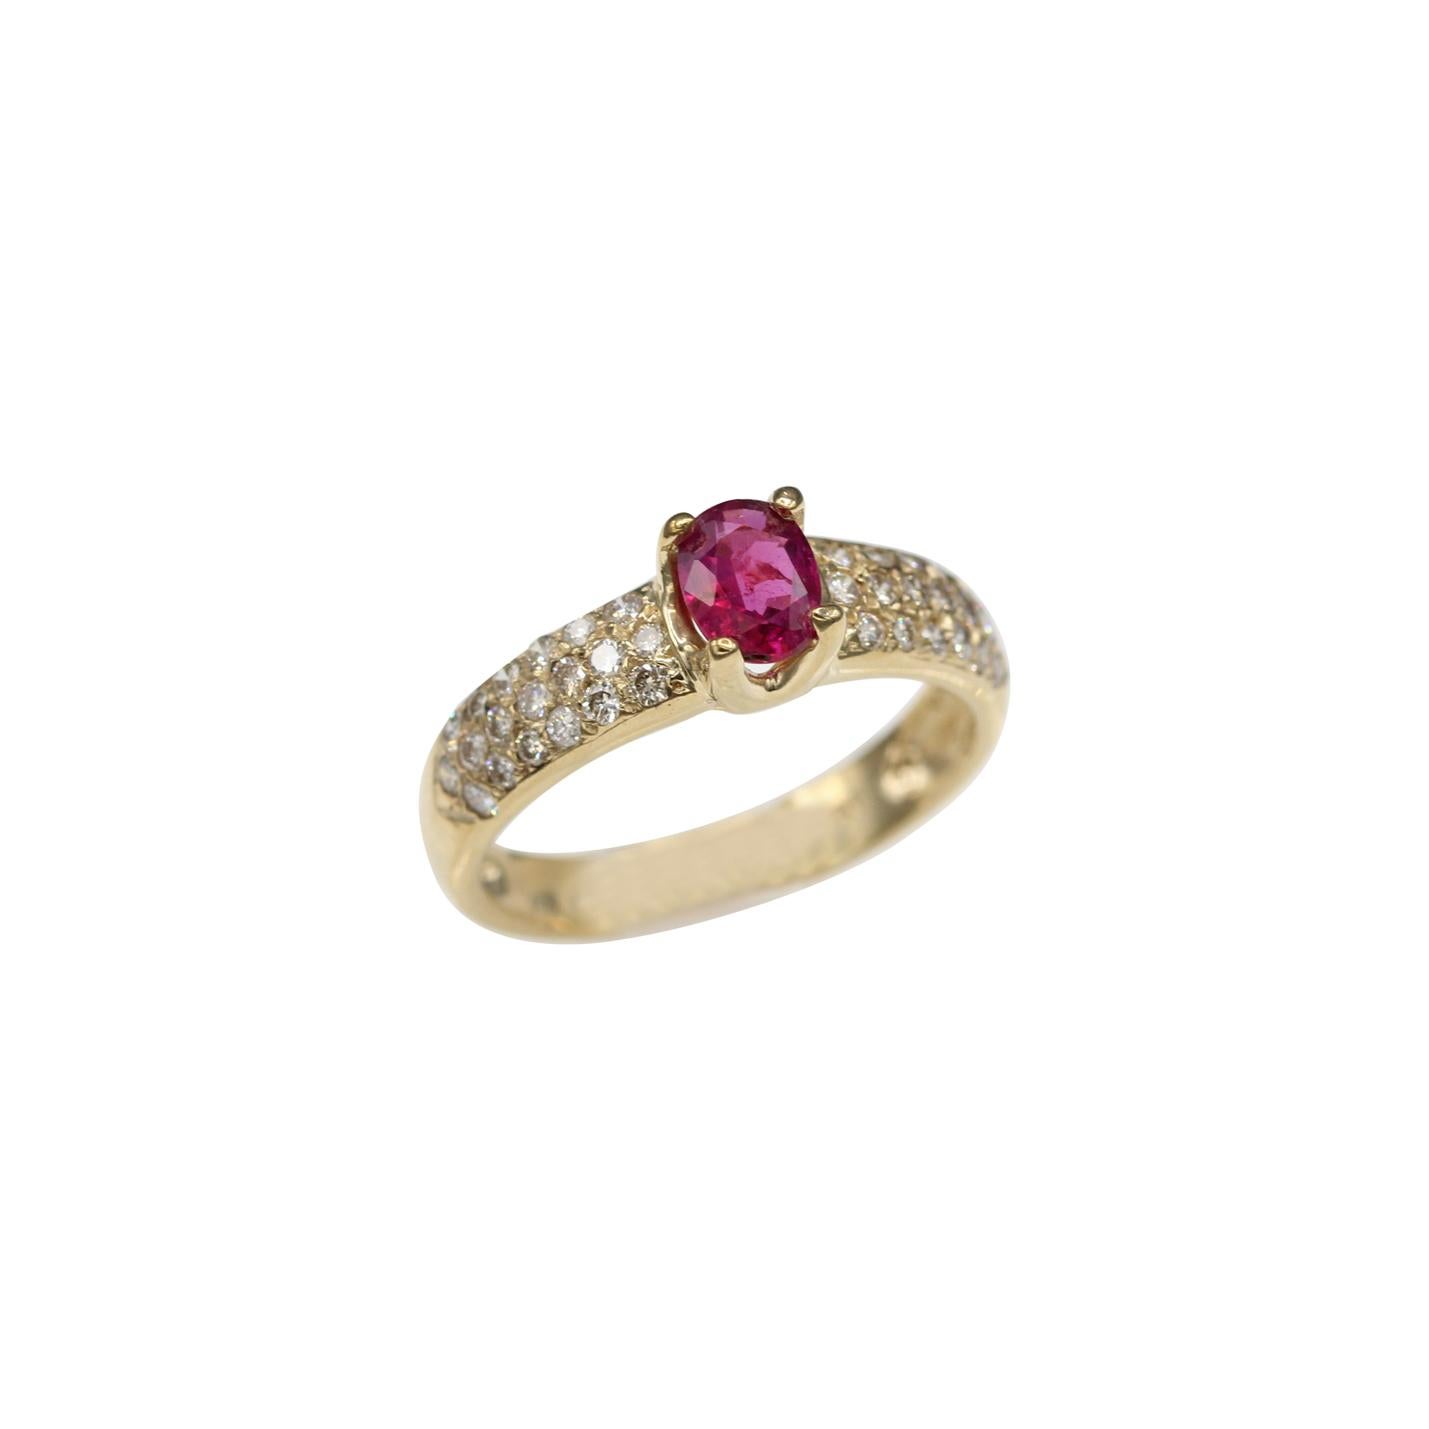 Bague en or jaune 14 carats et diamants avec rubis naturel de forme ovale et rubis de 0,65 carat